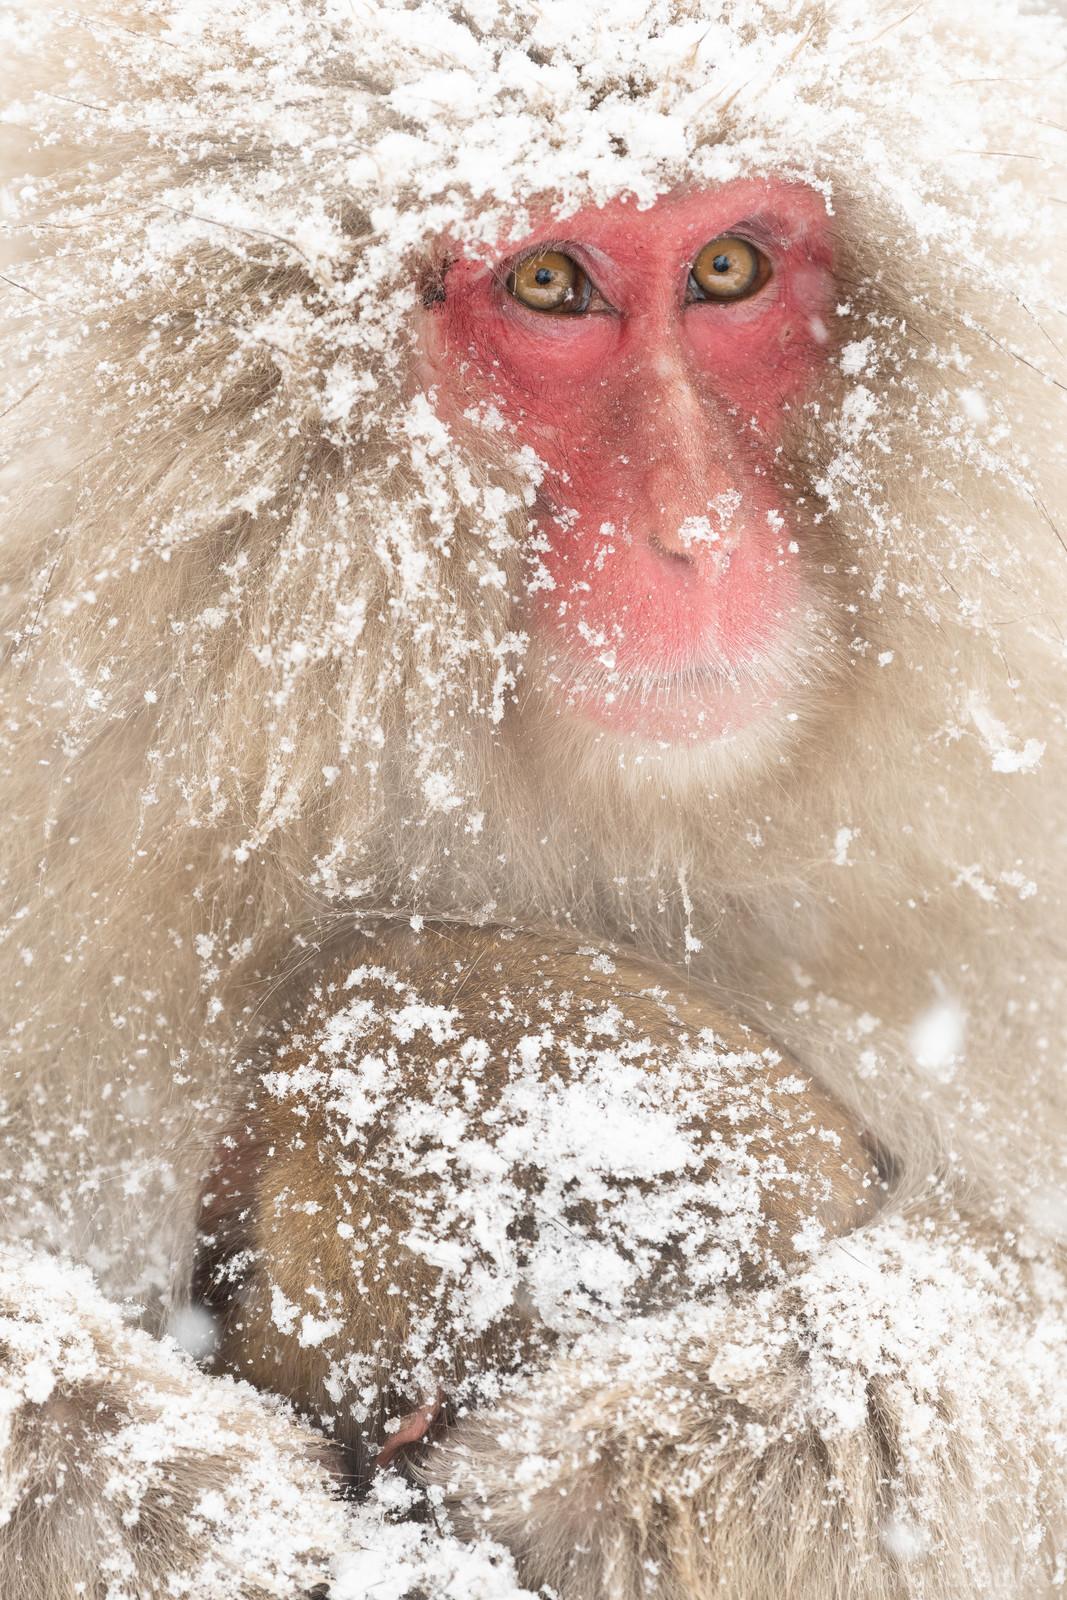 Image of Jigokudani Monkey Park by Colette English